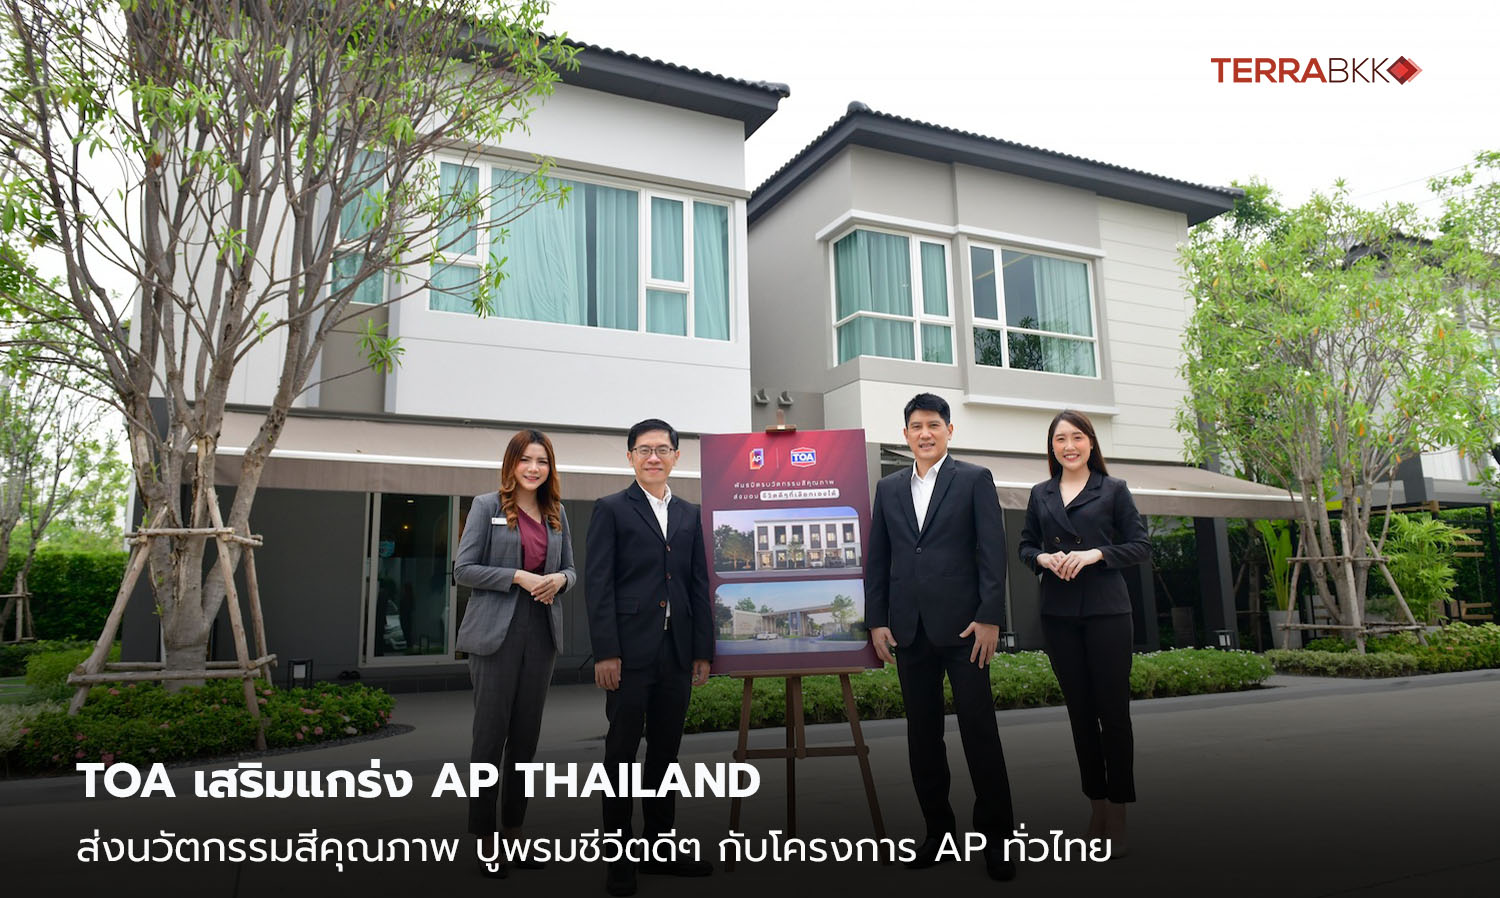 TOA เสริมแกร่ง AP THAILAND  ส่งนวัตกรรมสีคุณภาพ ปูพรมชีวีตดีๆ กับโครงการ AP ทั่วไทย